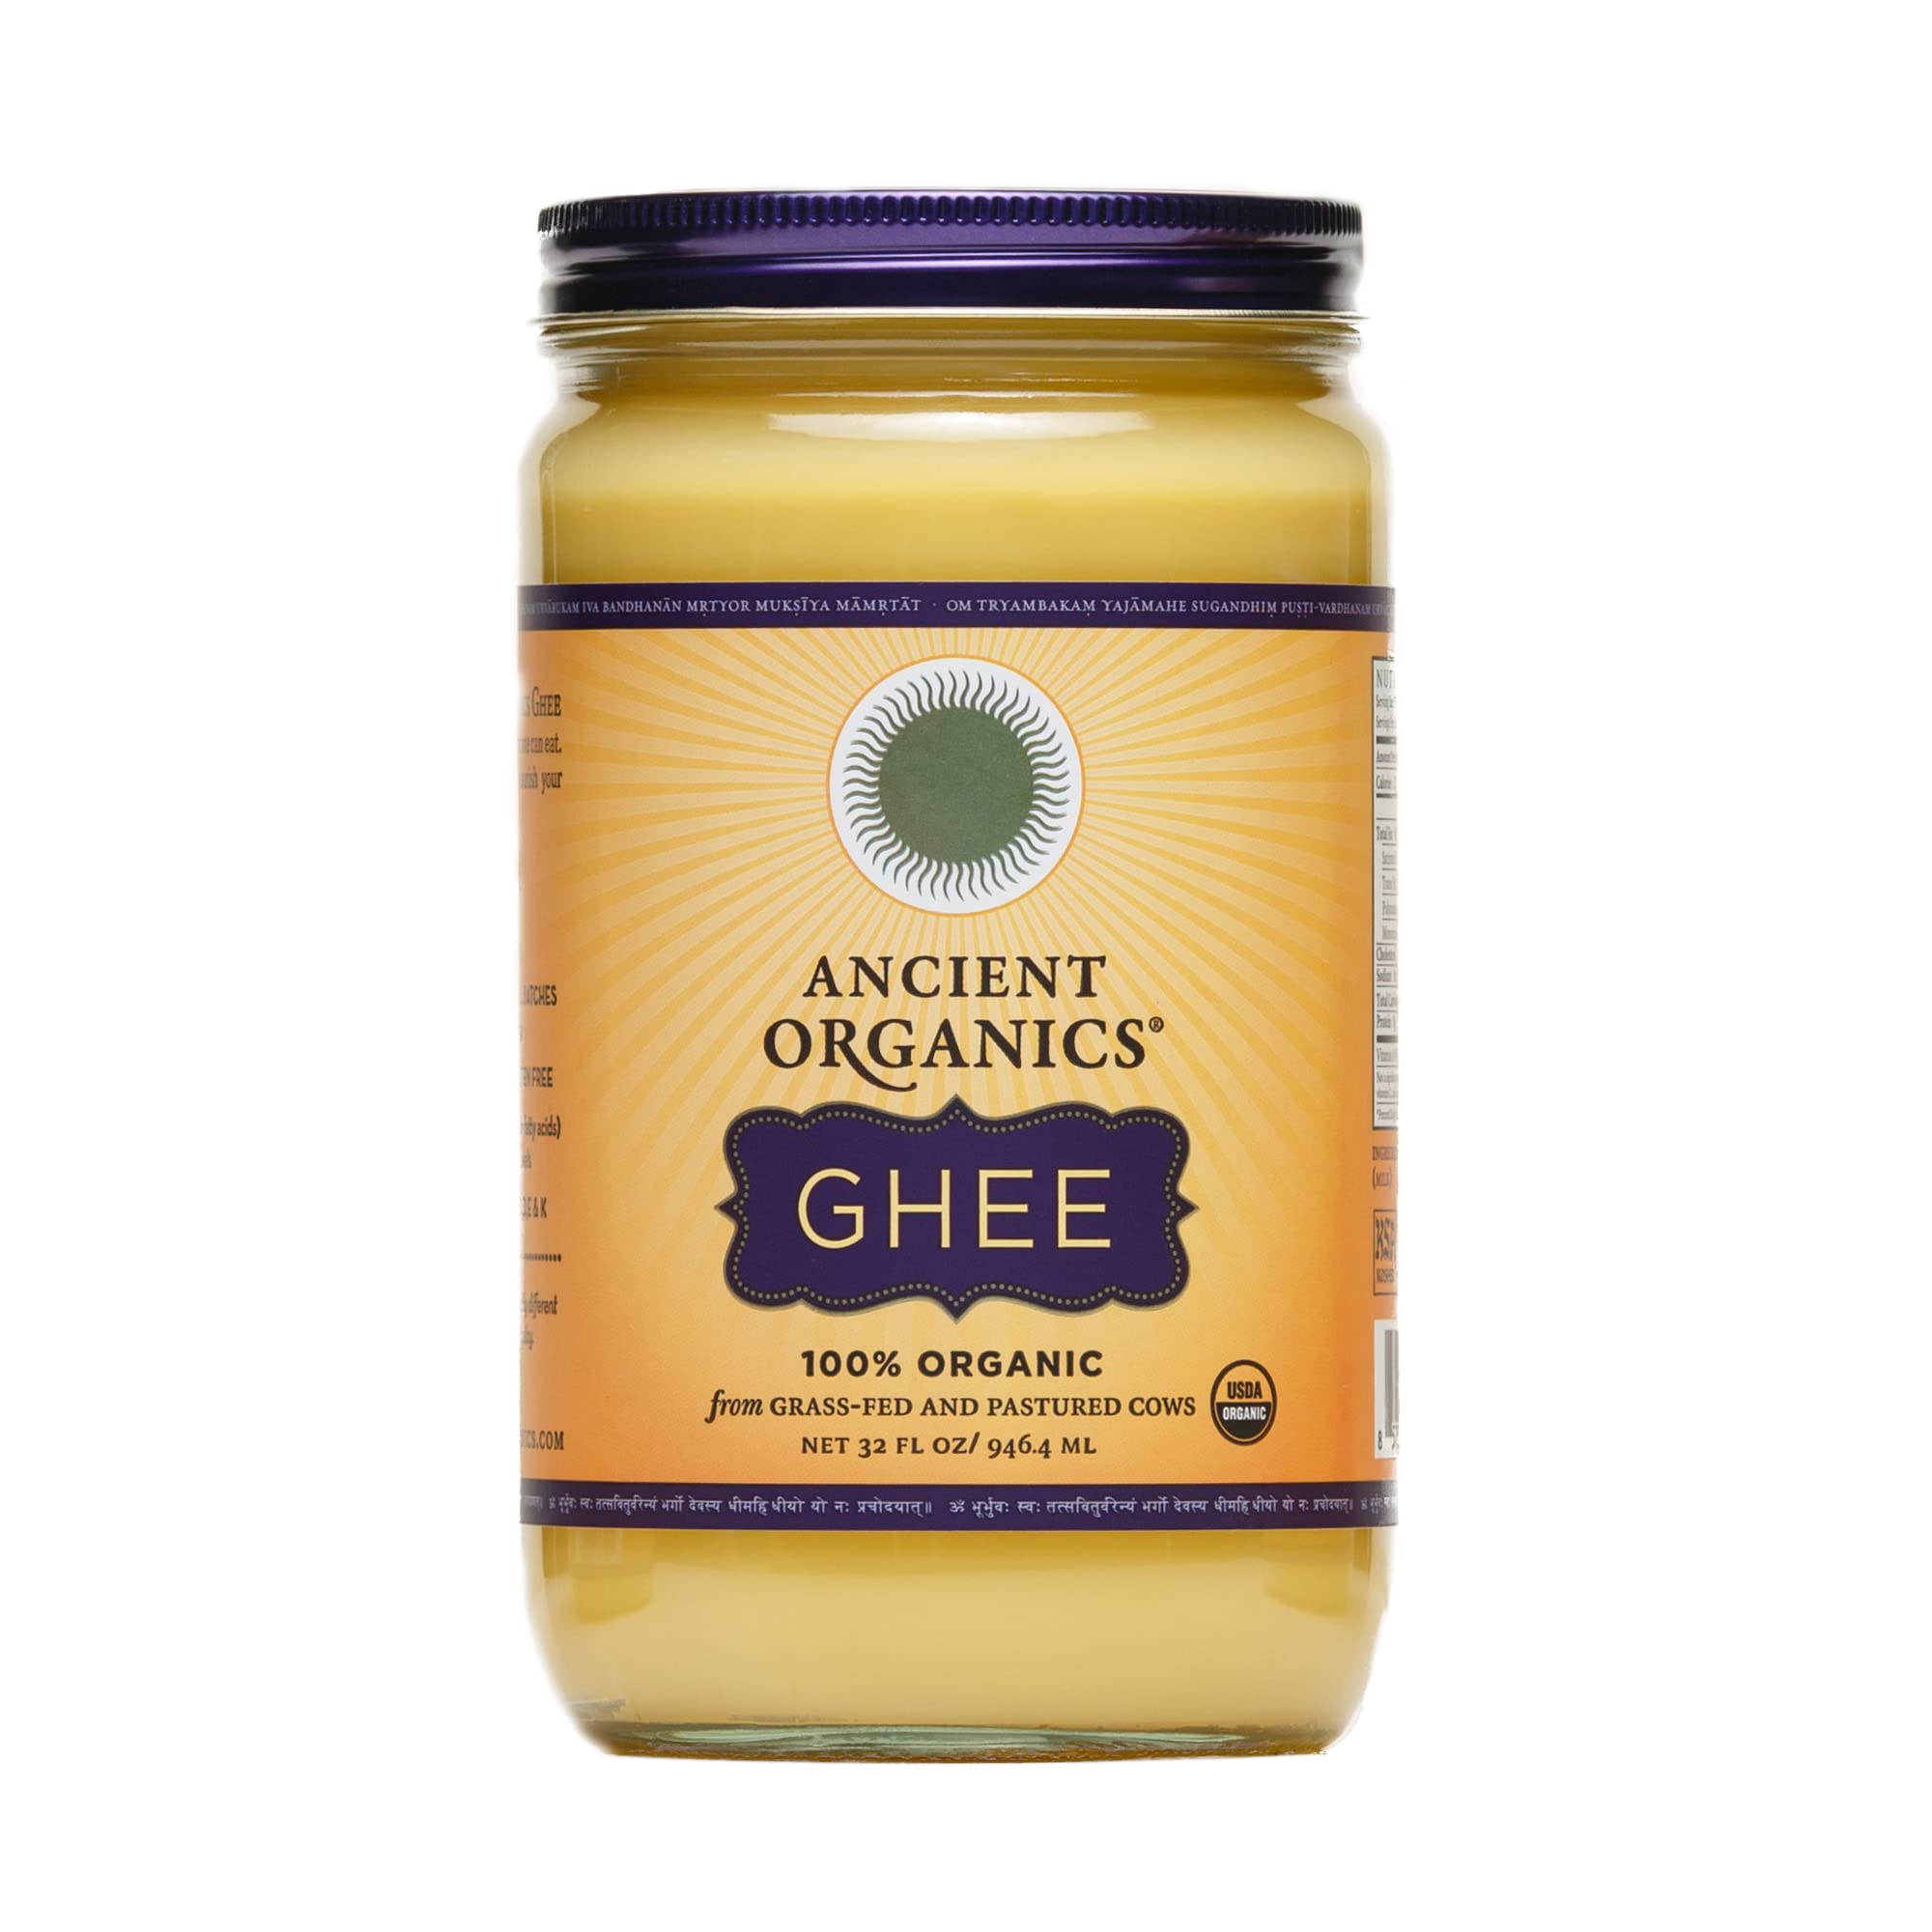 Ancient Organics Ghee Organic Grass Fed Ghee Butter – Gluten Free